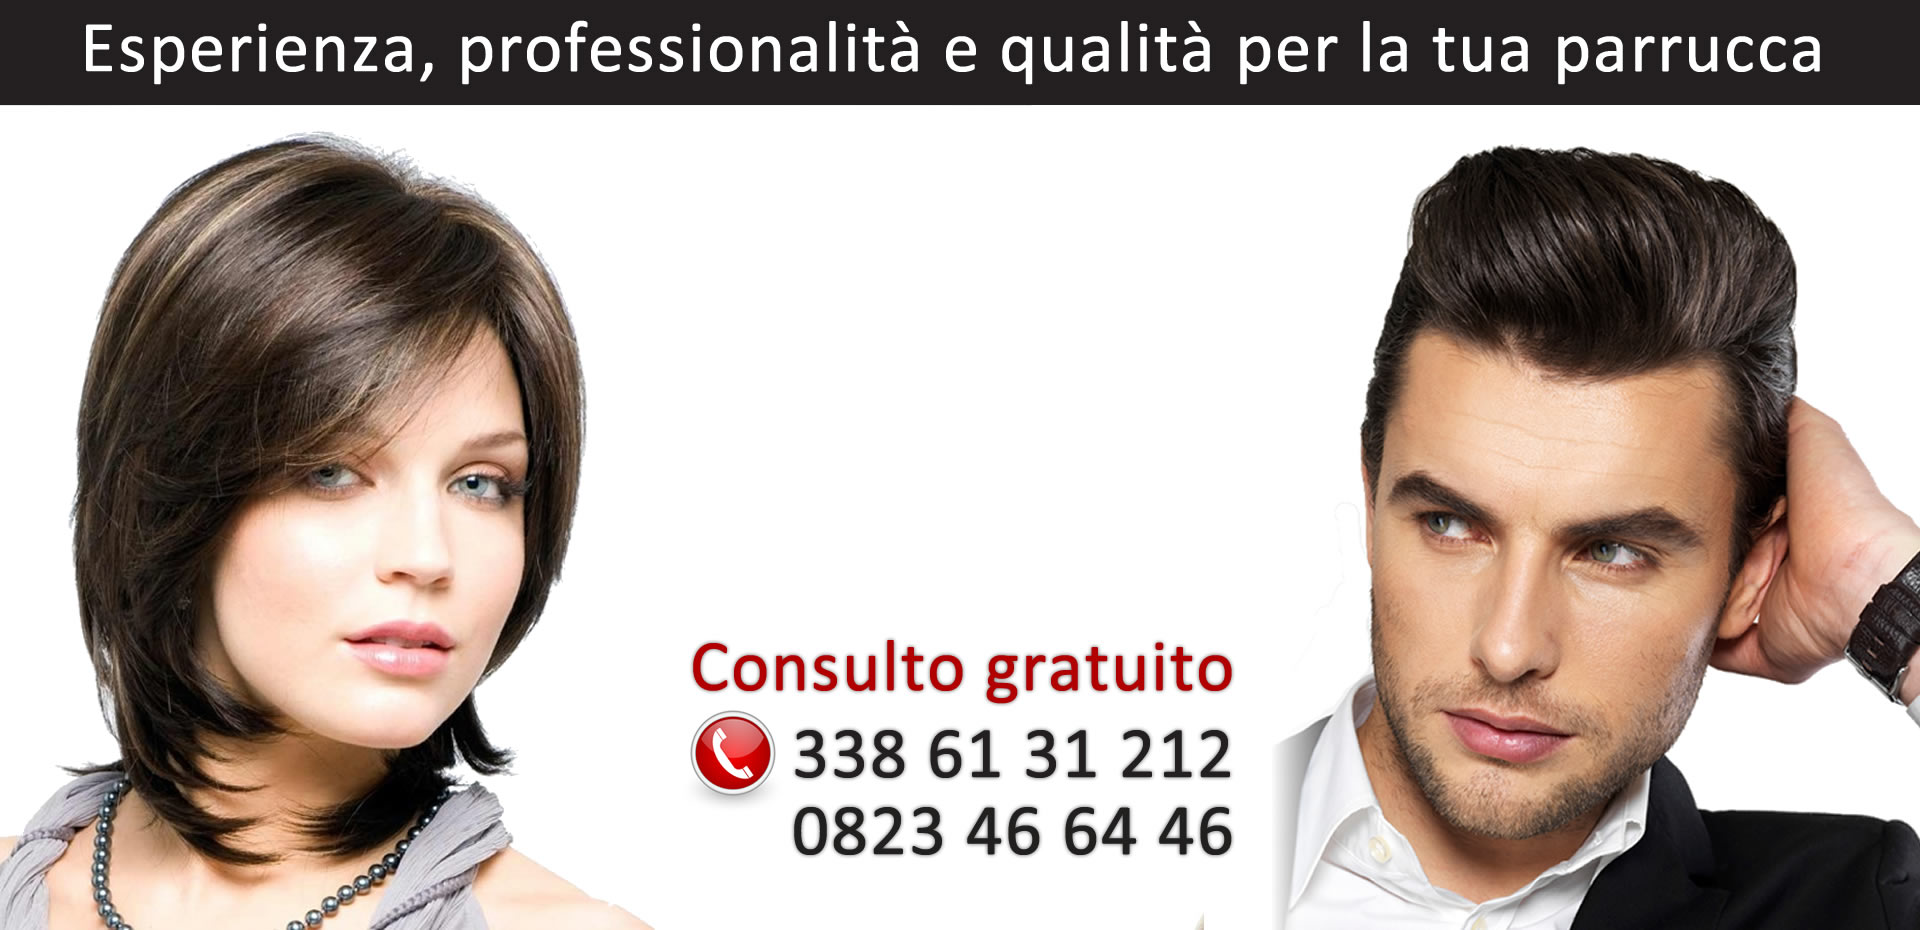 Parrucche Napoli - Centro vendita parrucche per calvizie e chemioterapia